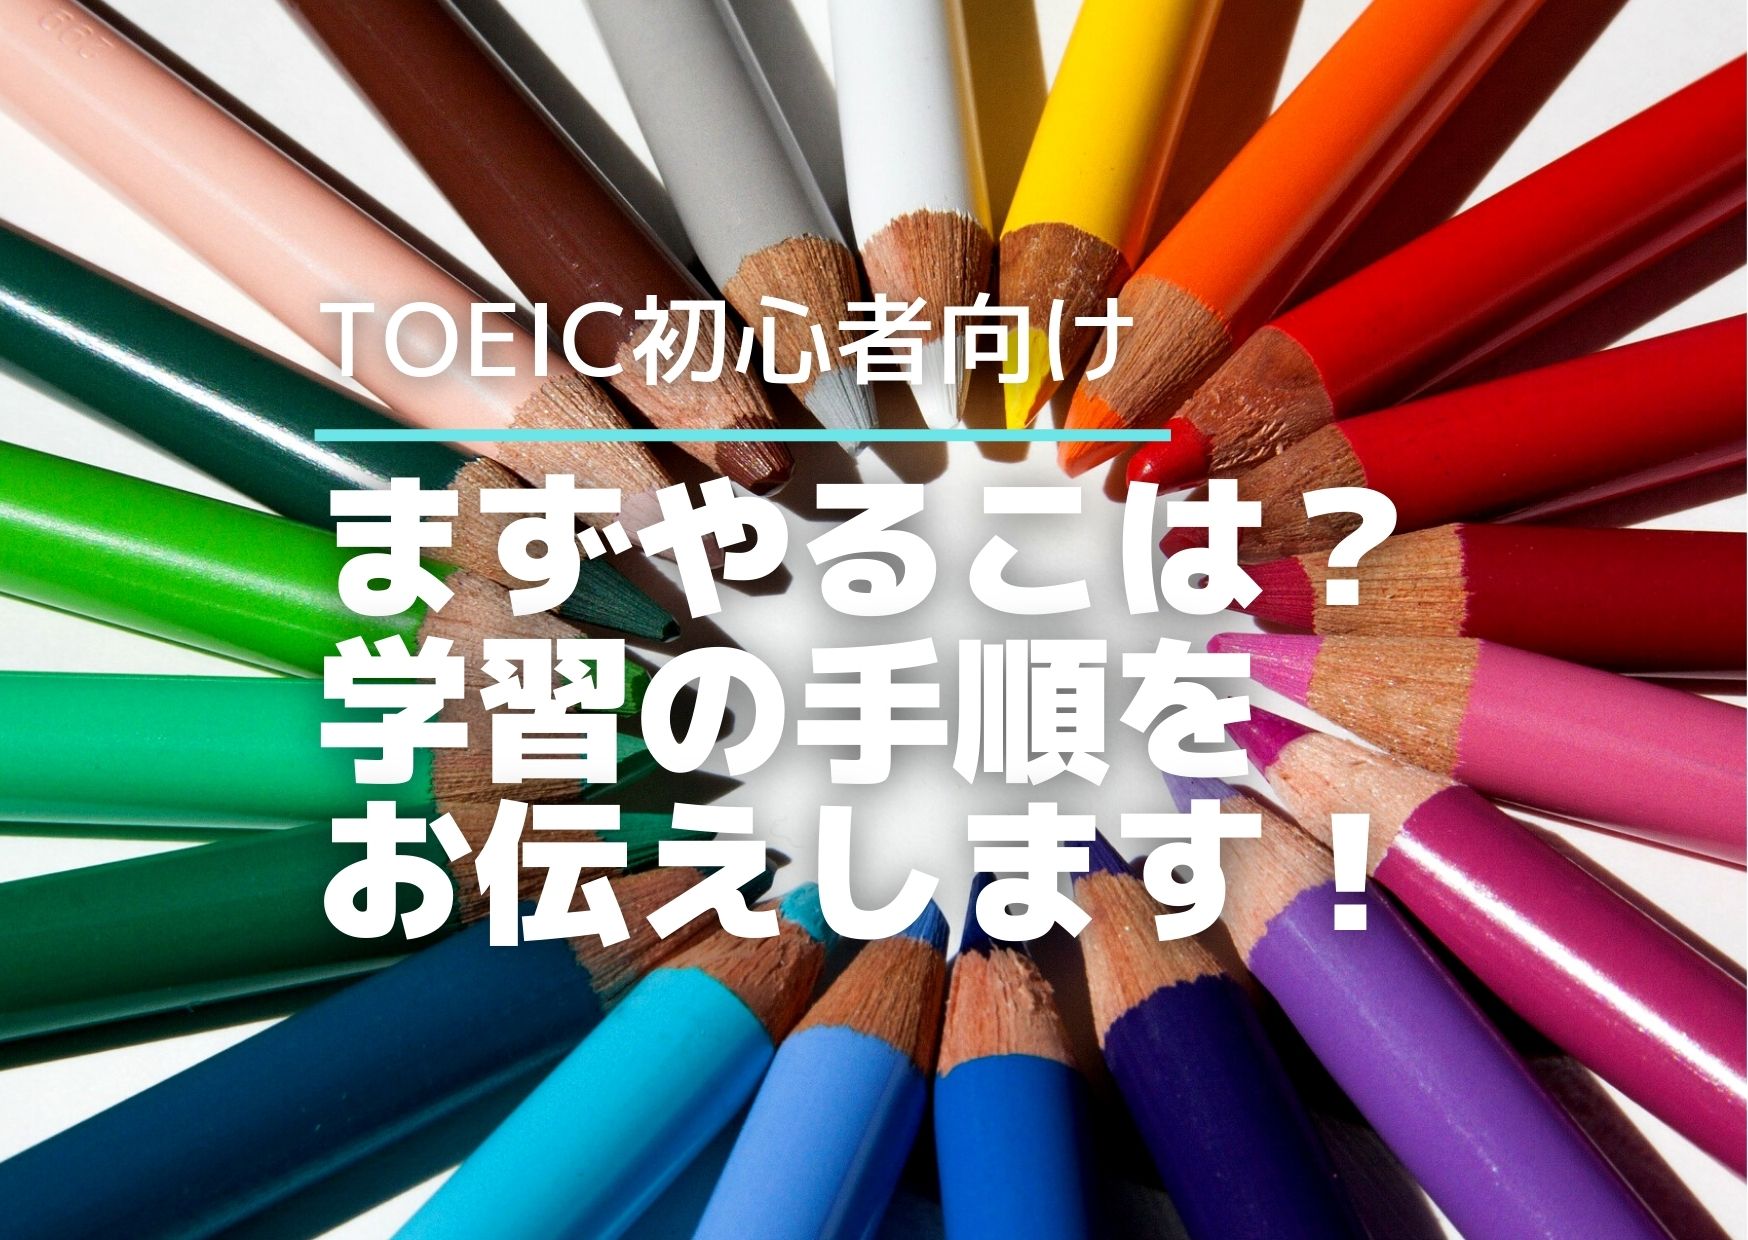 Toeic初心者の勉強法 おすすめの参考書とまずやることを解説